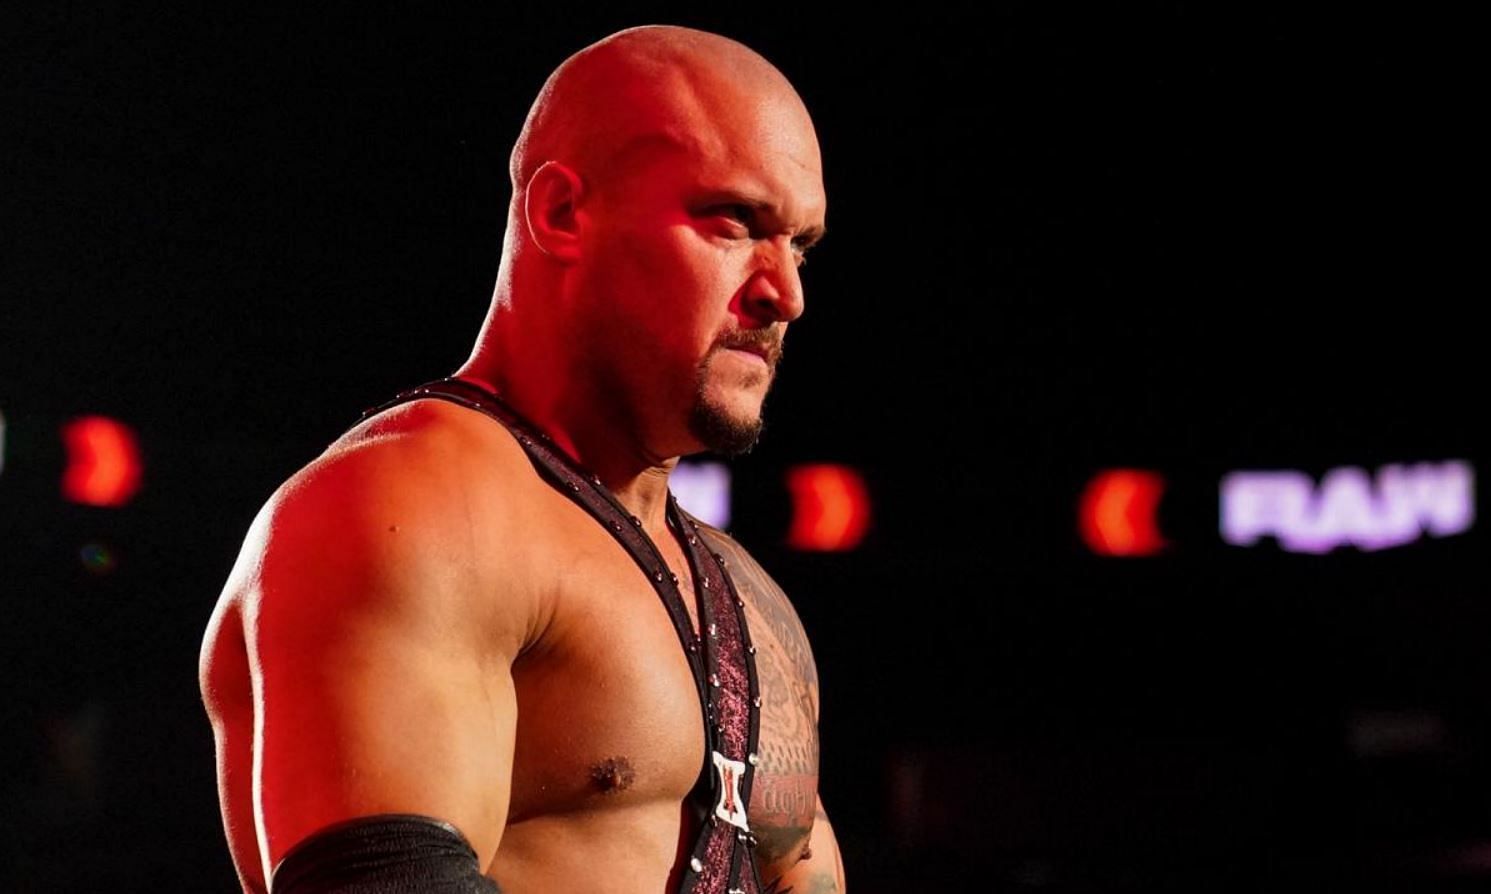 Killer Kross was released by the WWE in November last year